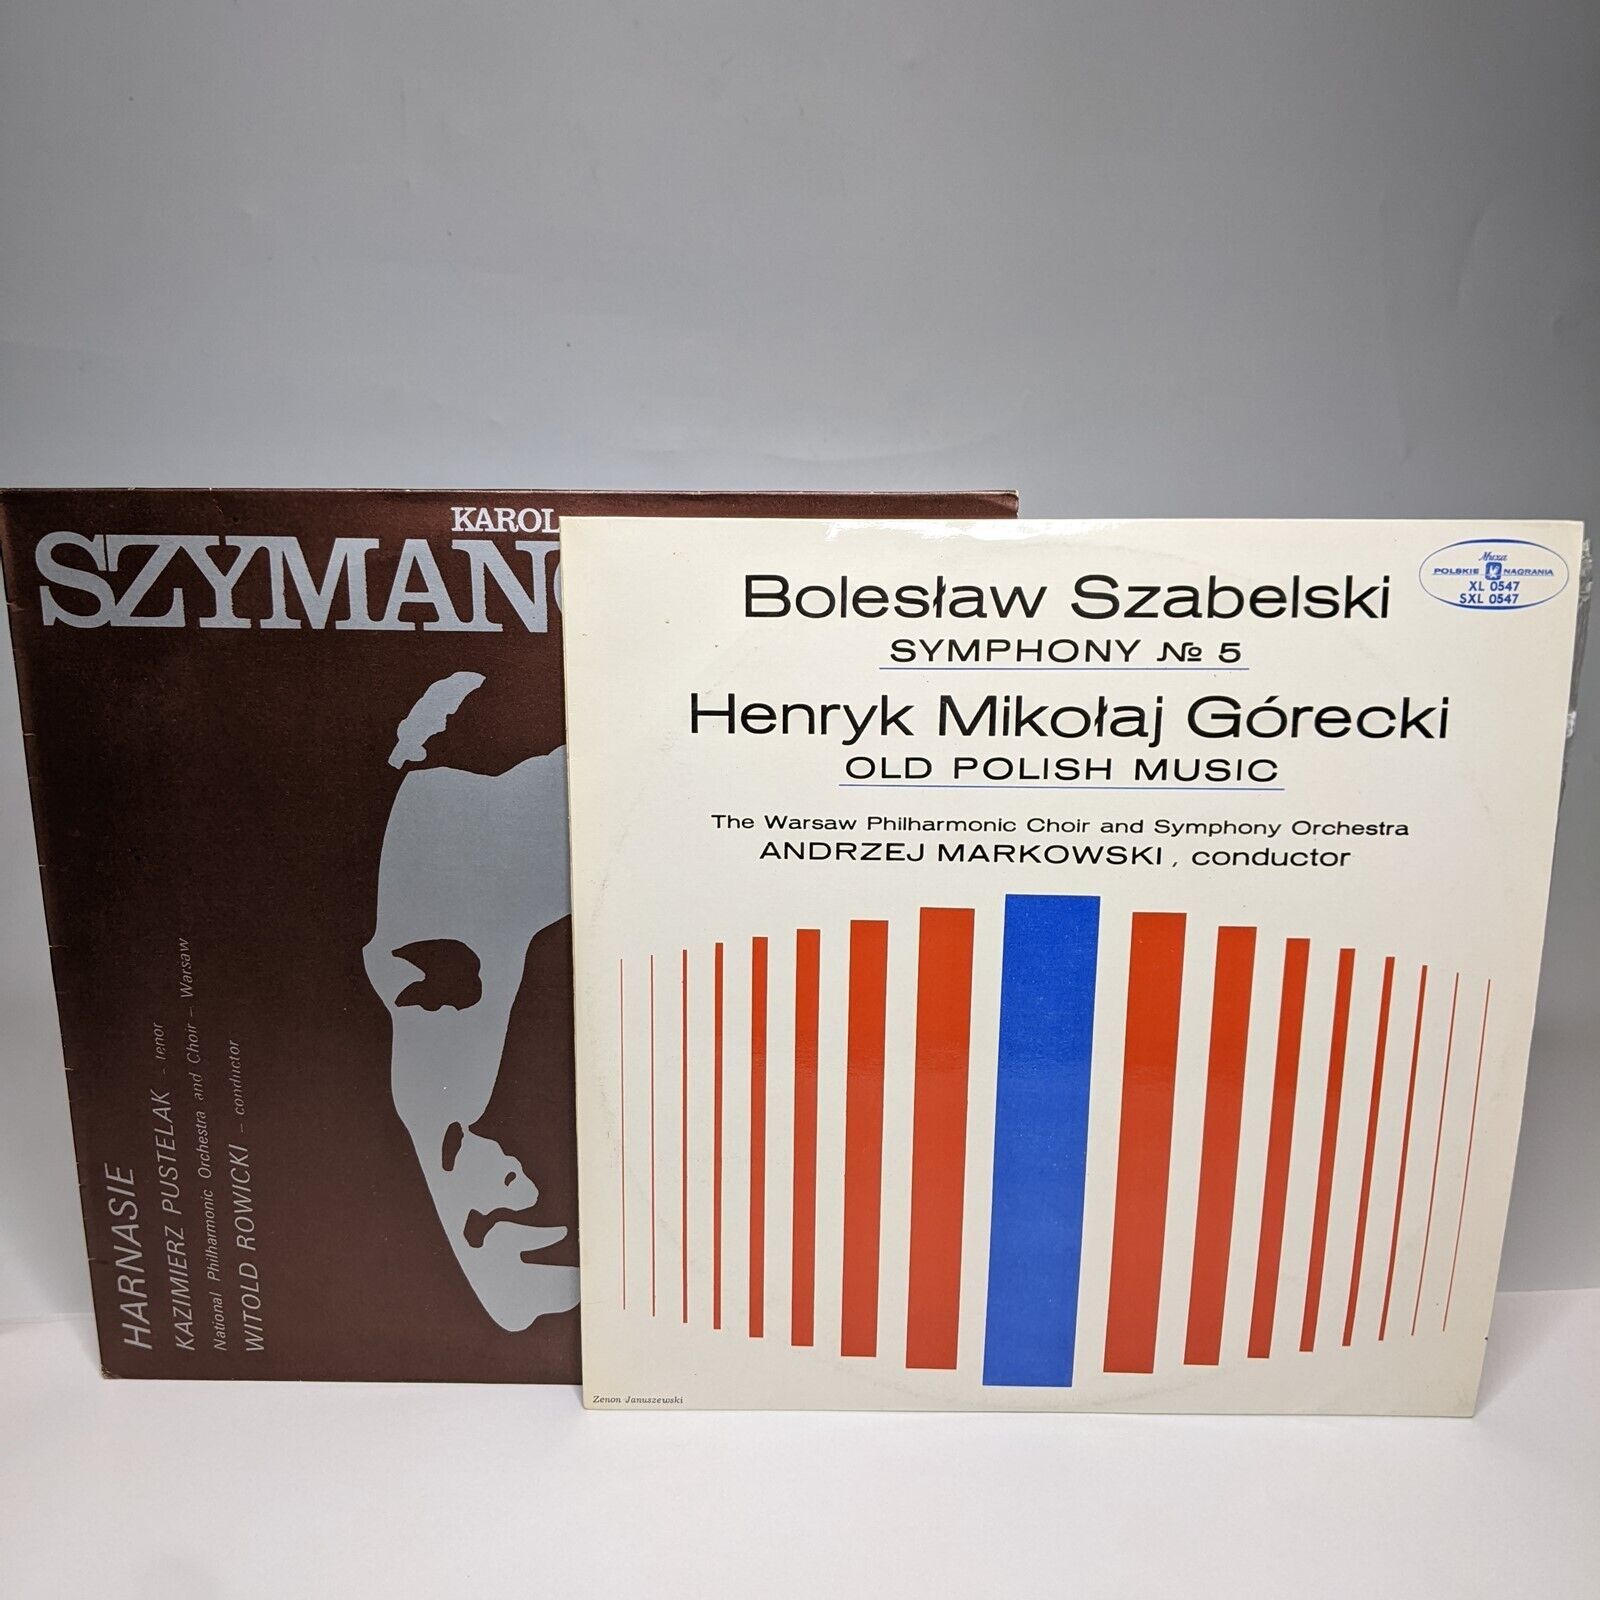 x2 LOT Polish Classical 33 RPM Karol Szymanowski Harnasie Boleslaw Szabelski L2